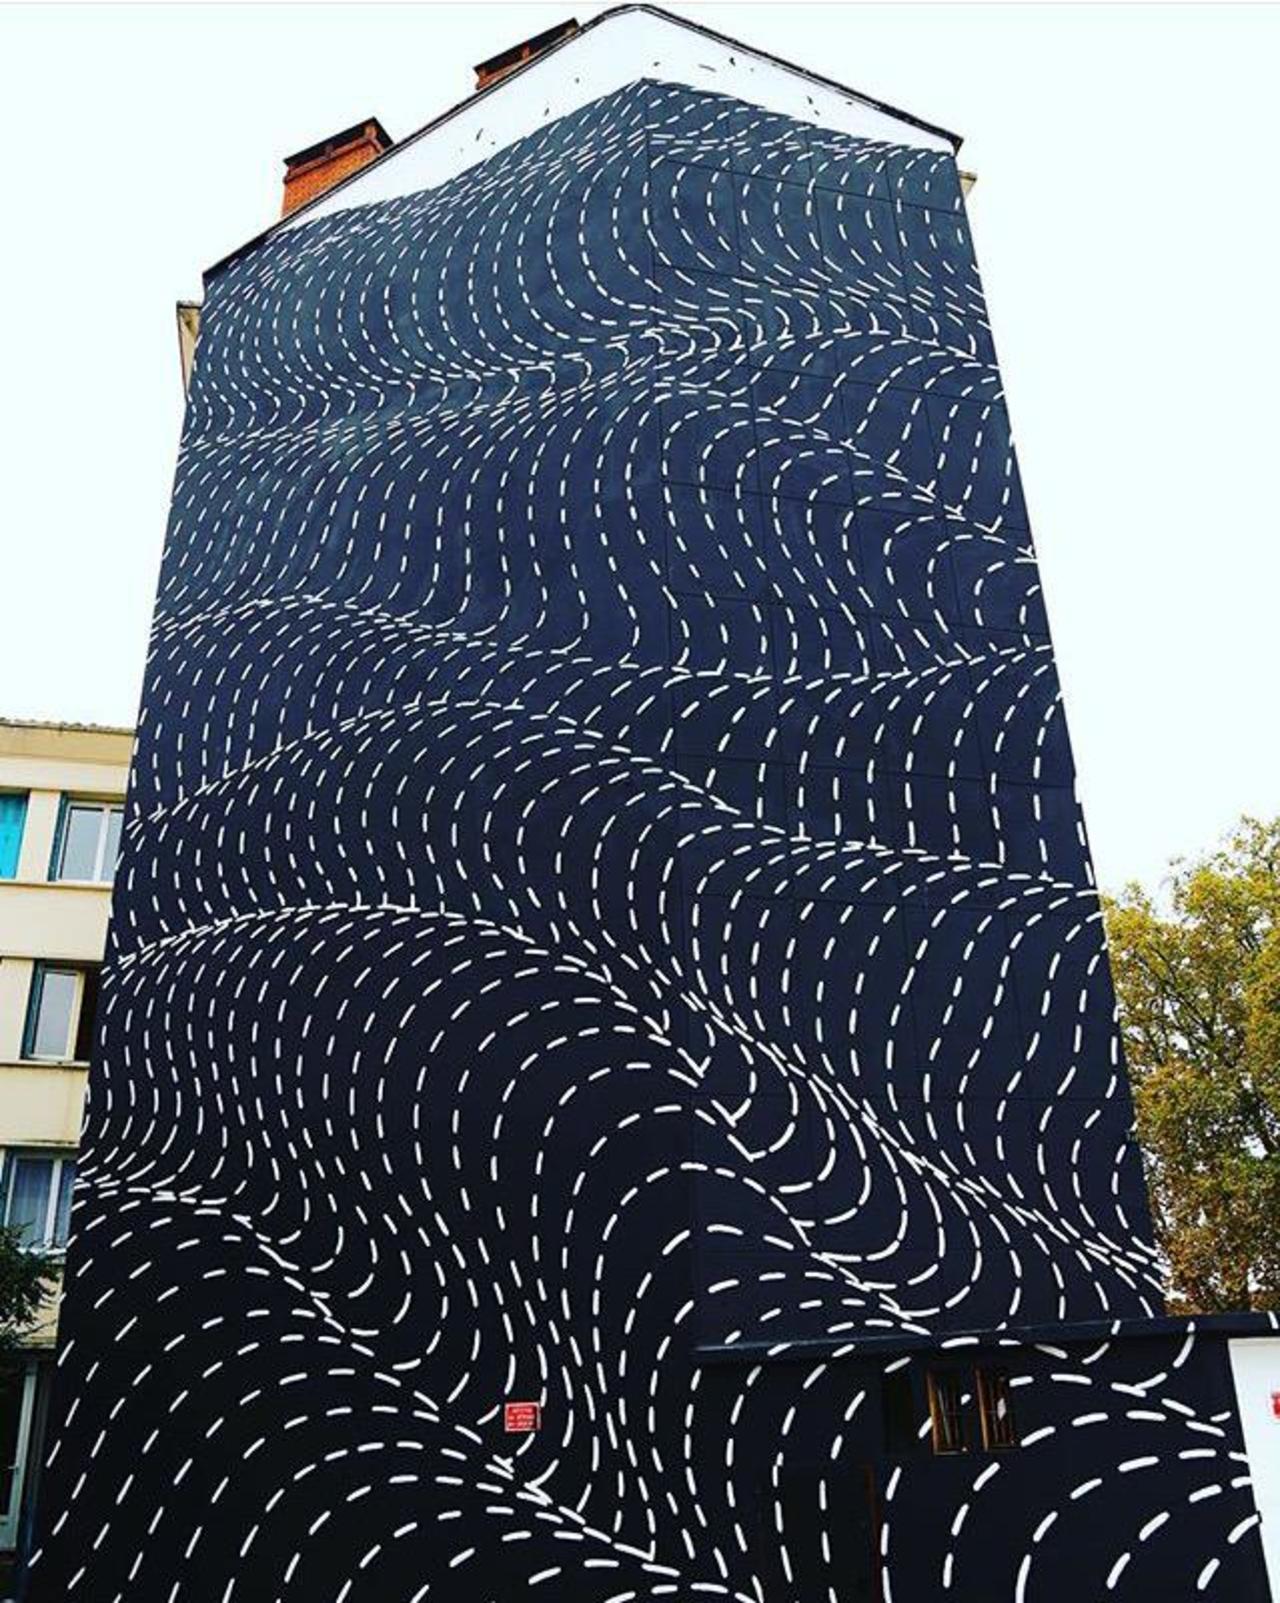 New Street Art by Brendan Monroe's for WOPS ! Festival in Toulouse, France. 

#art #graffiti #mural #streetart https://t.co/7Wqdo2fVNX